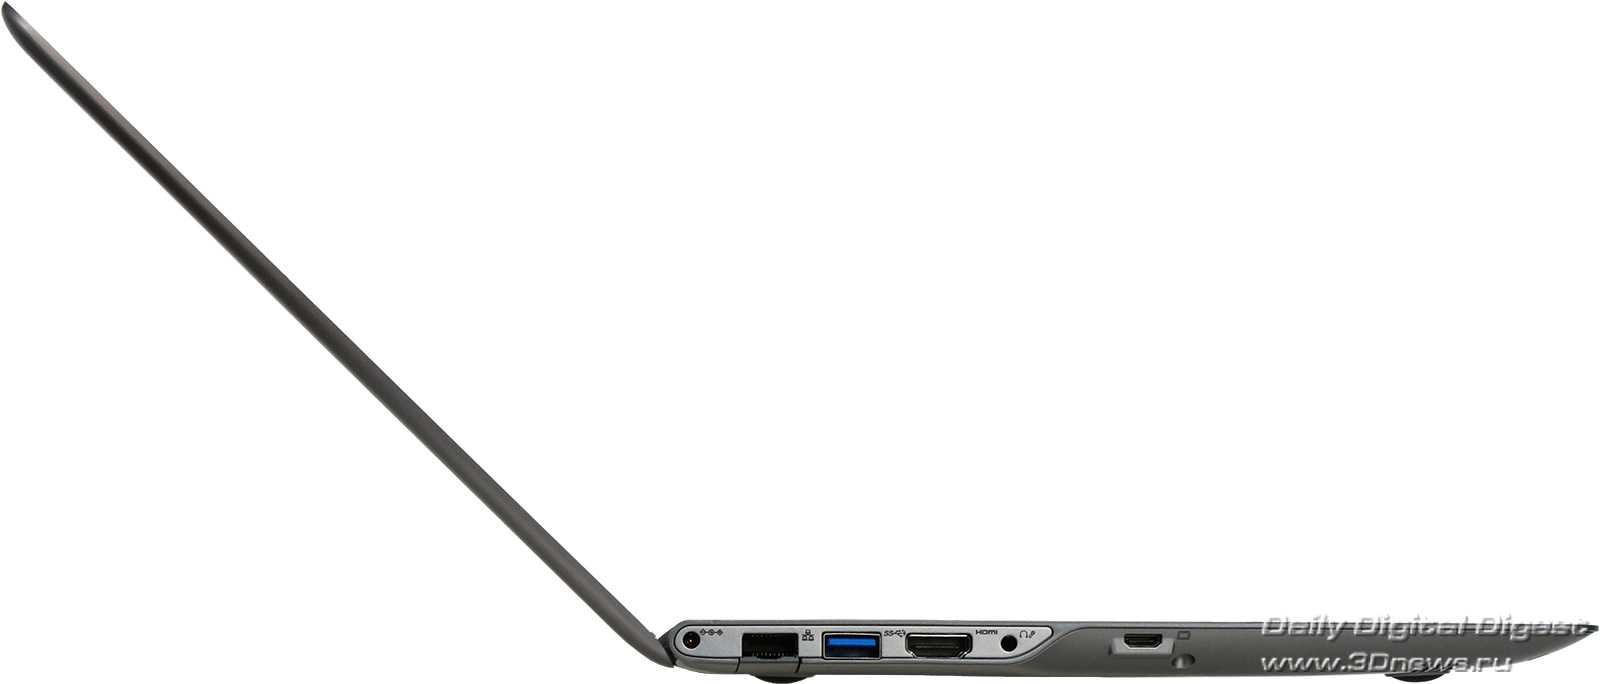 Ноутбук samsung np530u4b-s01 — купить, цена и характеристики, отзывы